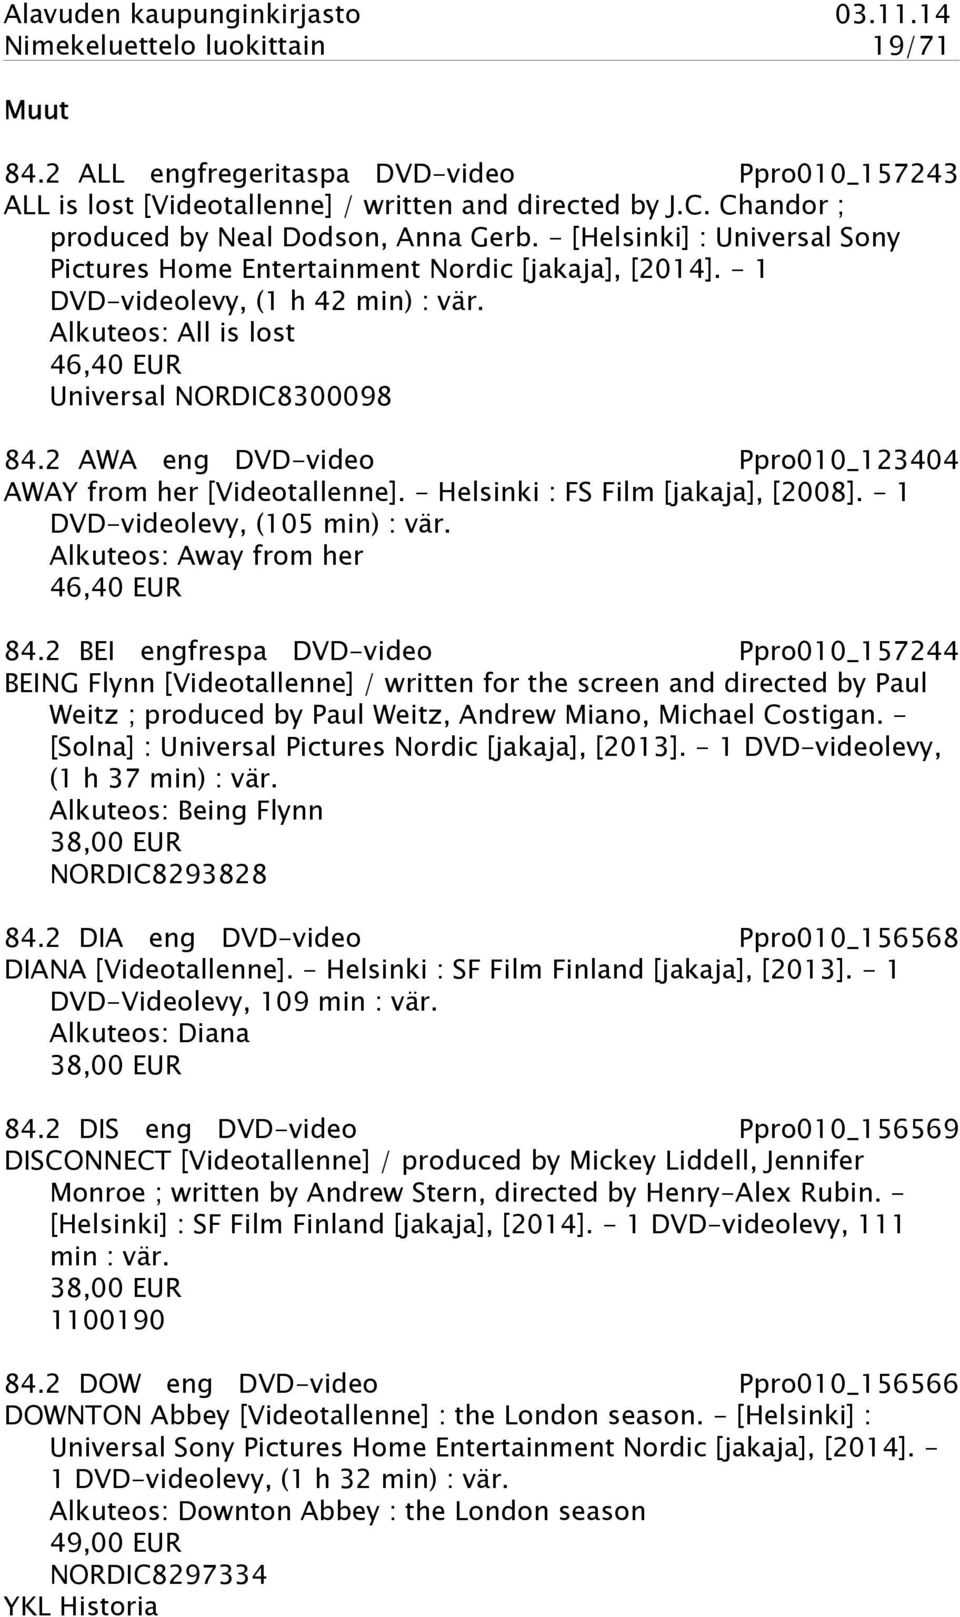 2 AWA eng DVD-video Ppro010_123404 AWAY from her [Videotallenne]. - Helsinki : FS Film [jakaja], [2008]. - 1 DVD-videolevy, (105 min) : vär. Alkuteos: Away from her 46,40 EUR 84.